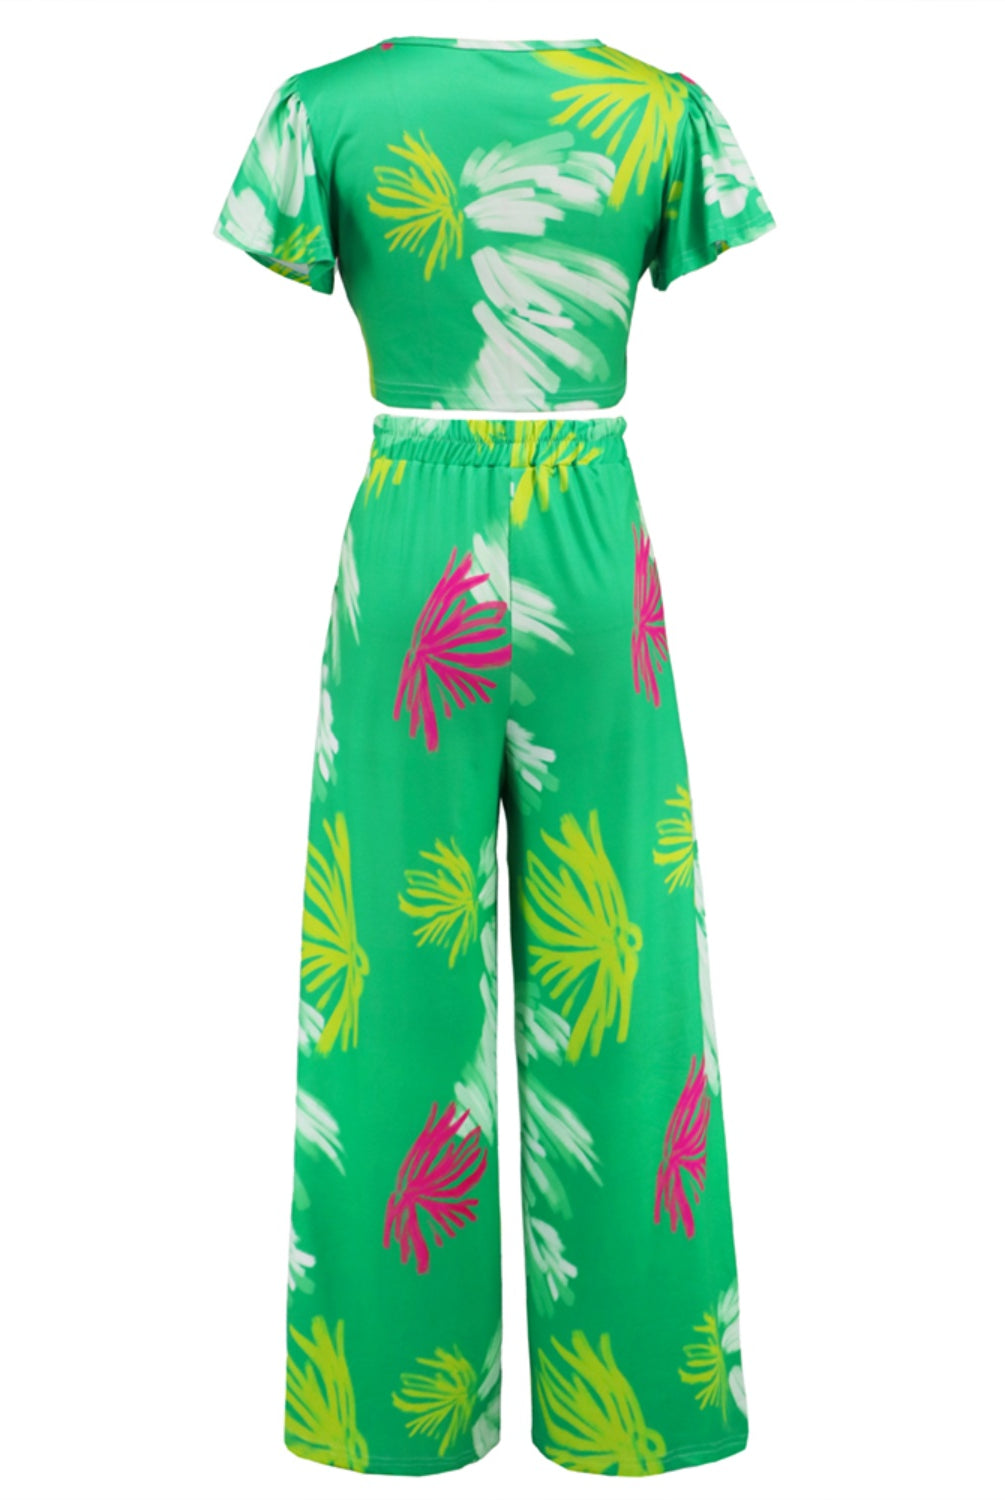 Medium Sea Green Printed V-Neck Top and Tied Pants Set Vacation